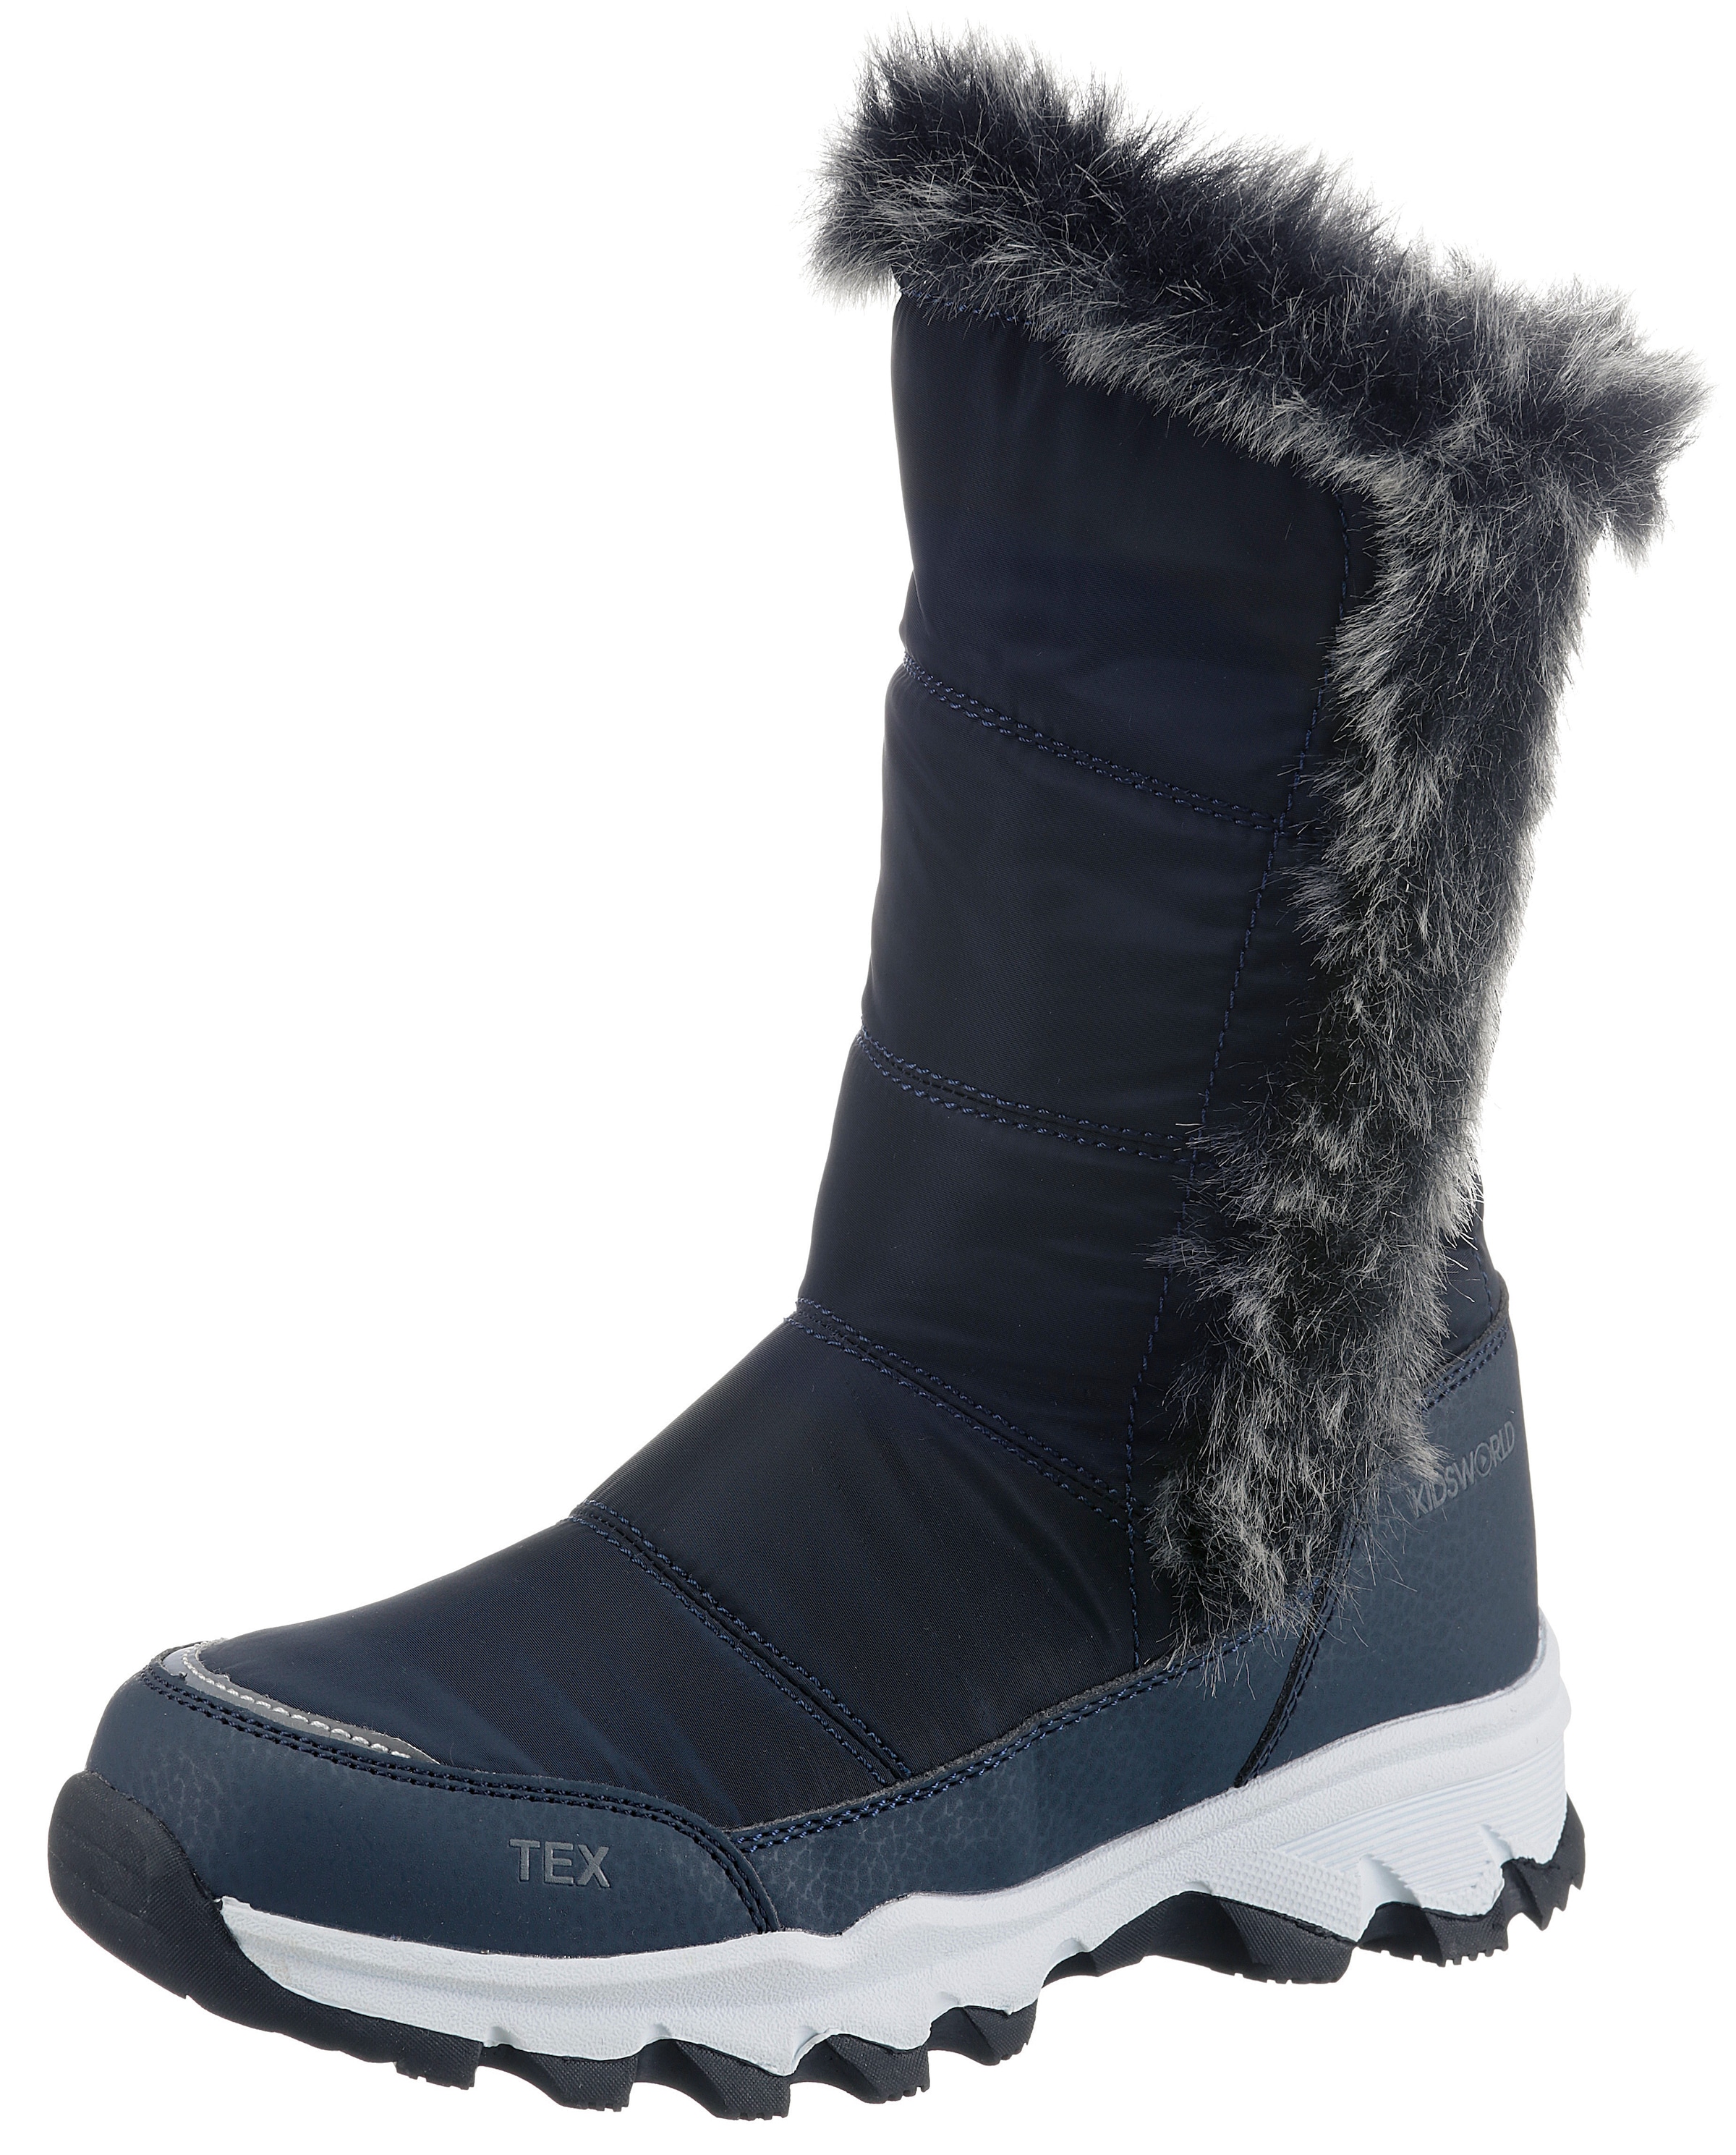 »Winterstiefel und Warmfutter günstig die Kleinen Thermo mit Stiefel«, bei | Snowboots TEX-Ausstattung KIDSWORLD für